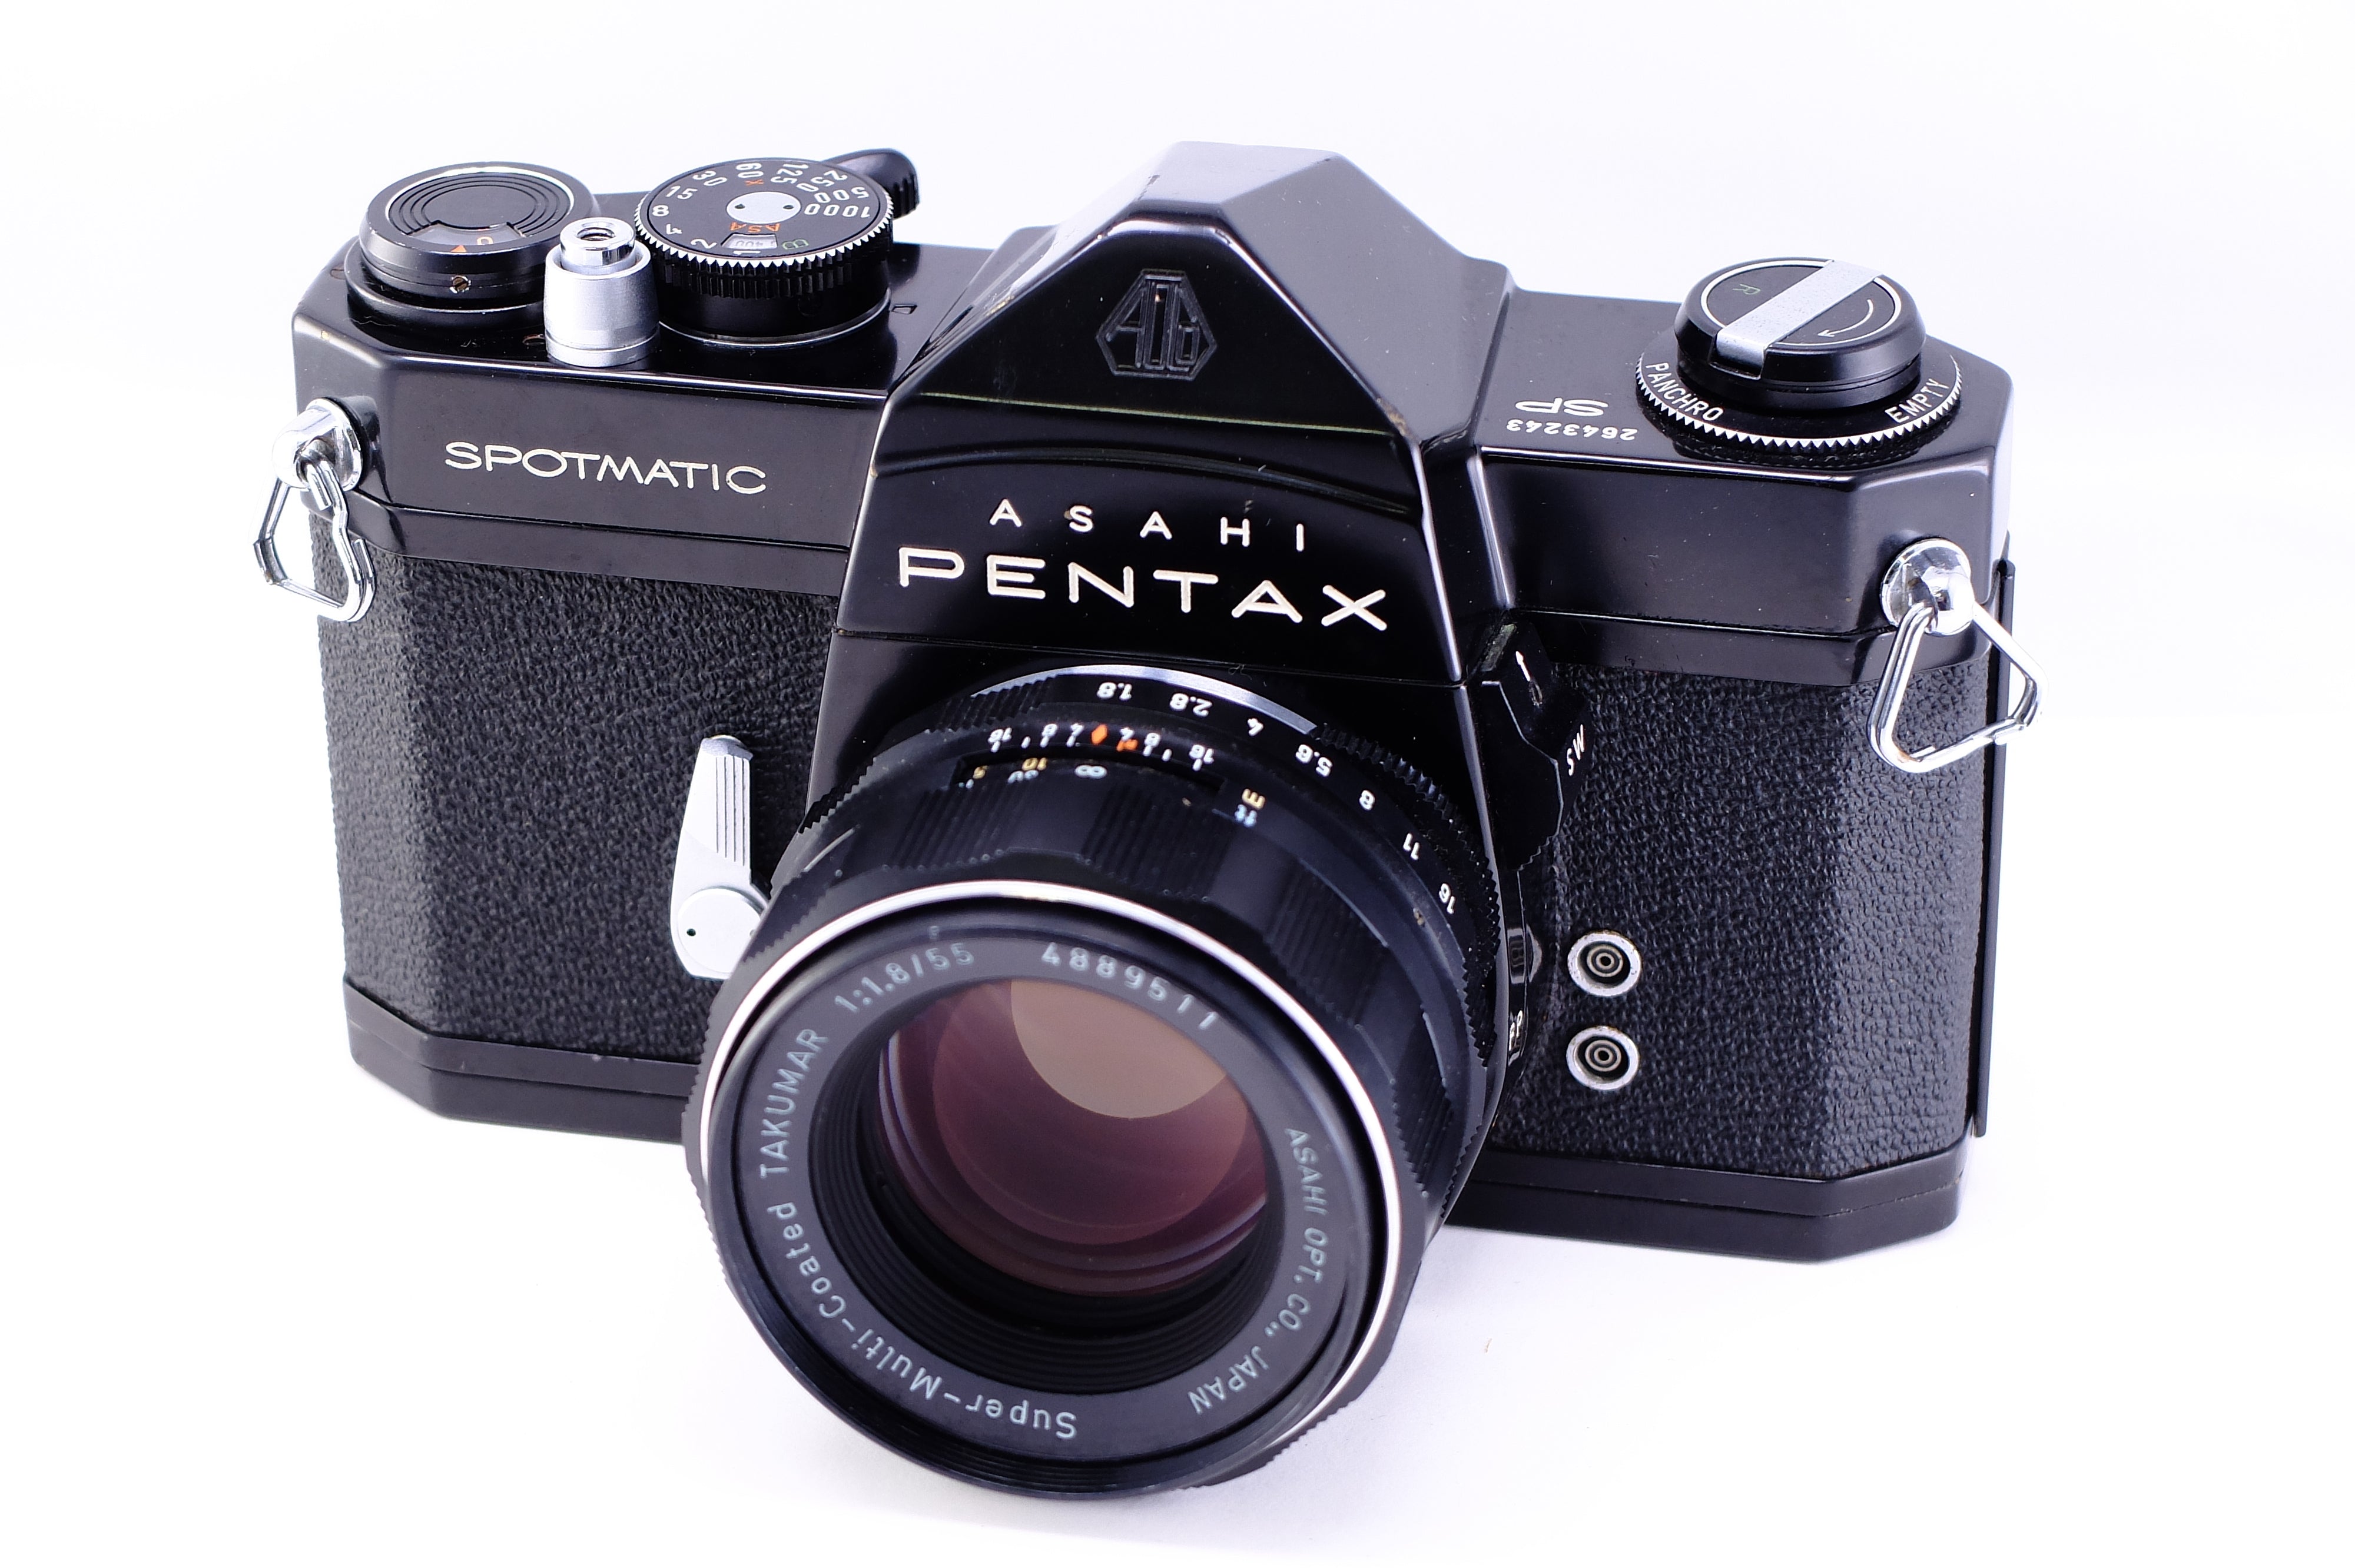 ASAHI PENTAXSPFブラックsuper-Takumar55mmf1.8種類一眼レフカメラ